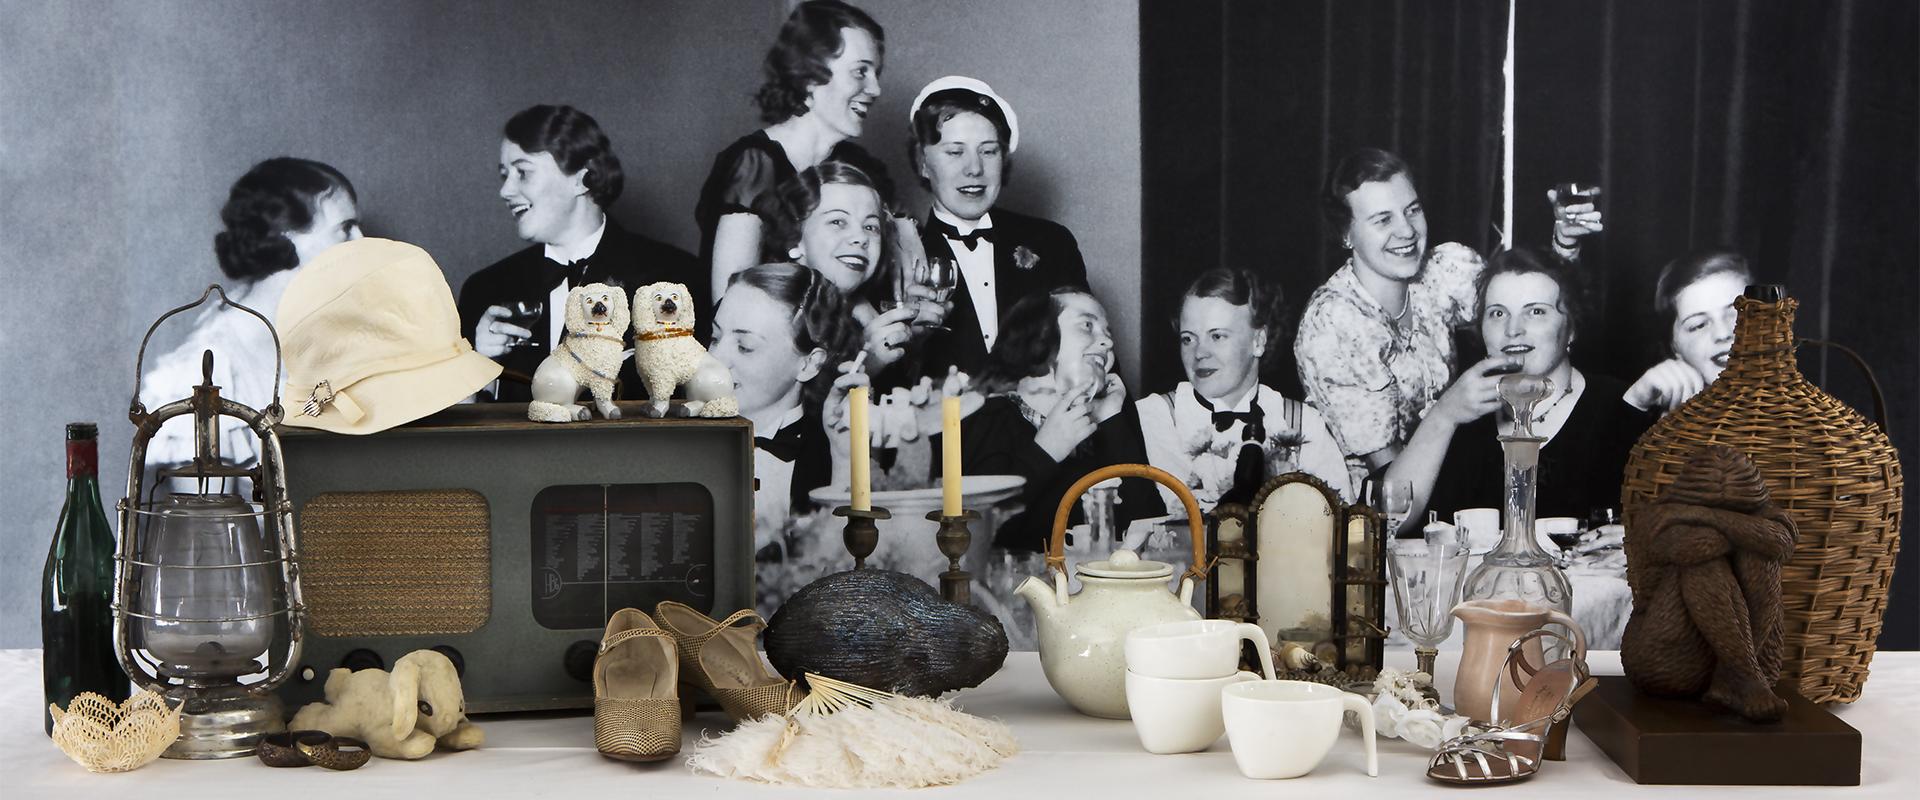 Ålands Museum visar ett collage av föremål